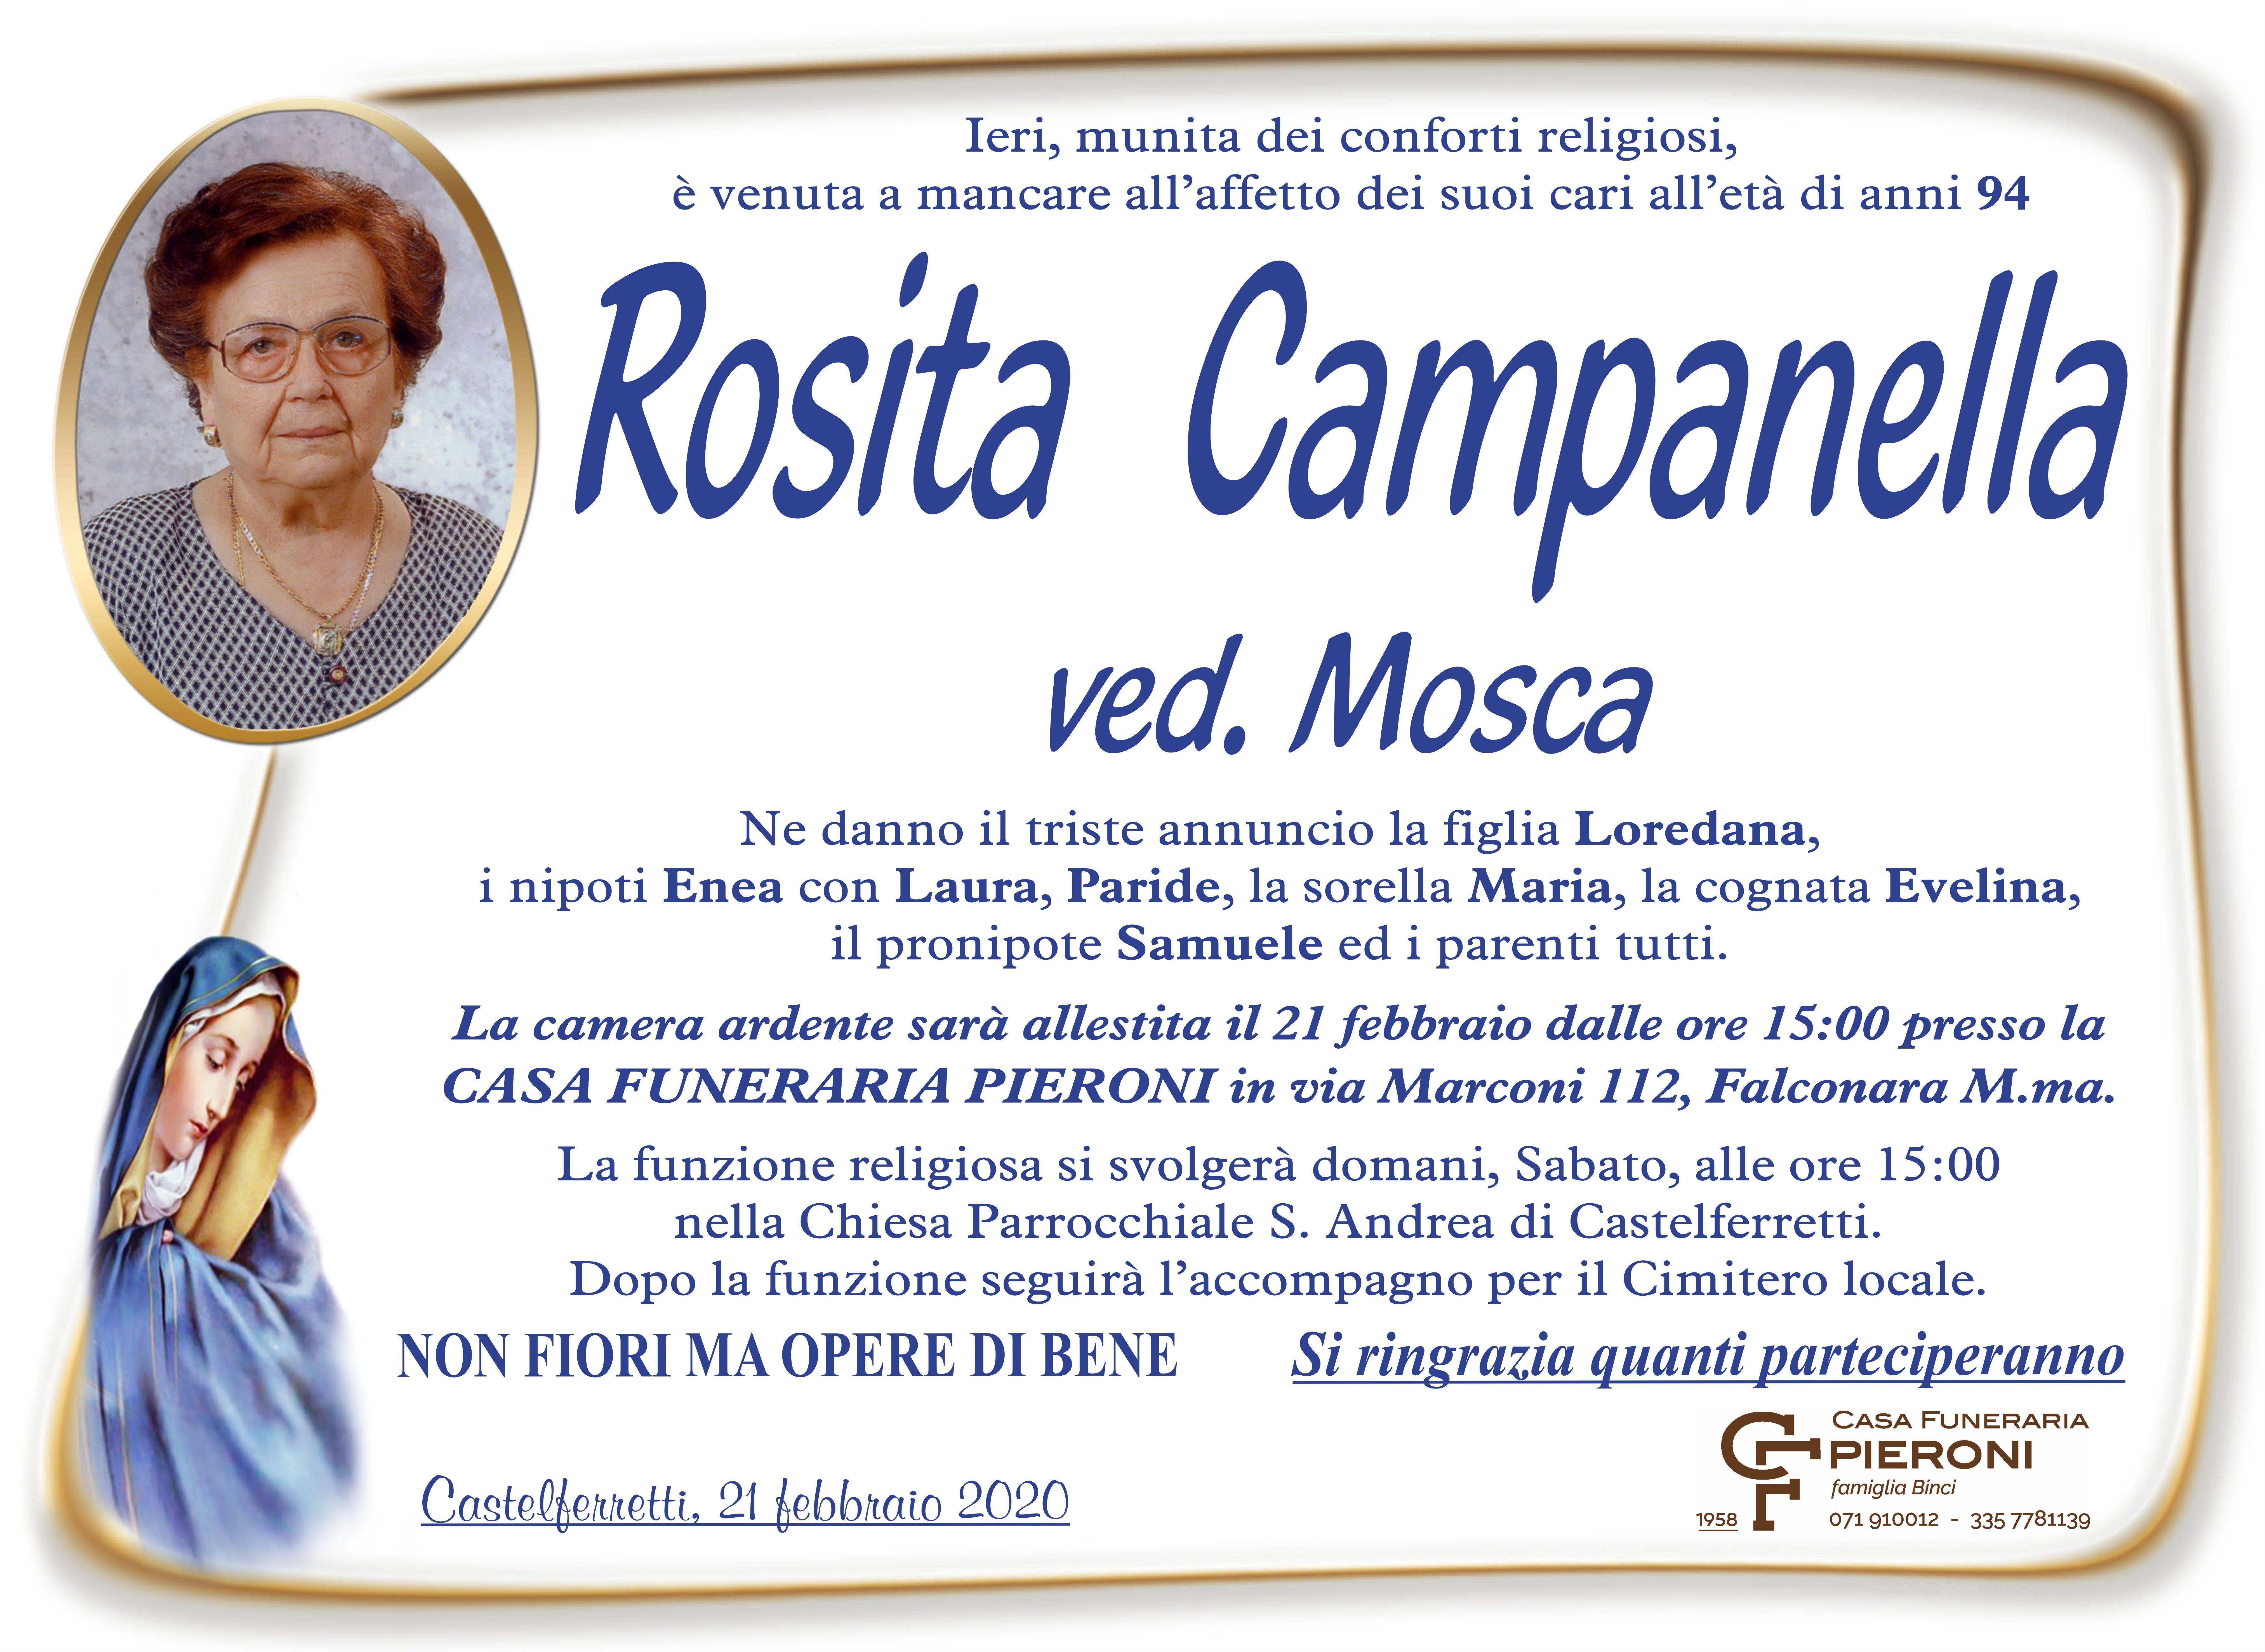 Rosita Campanella